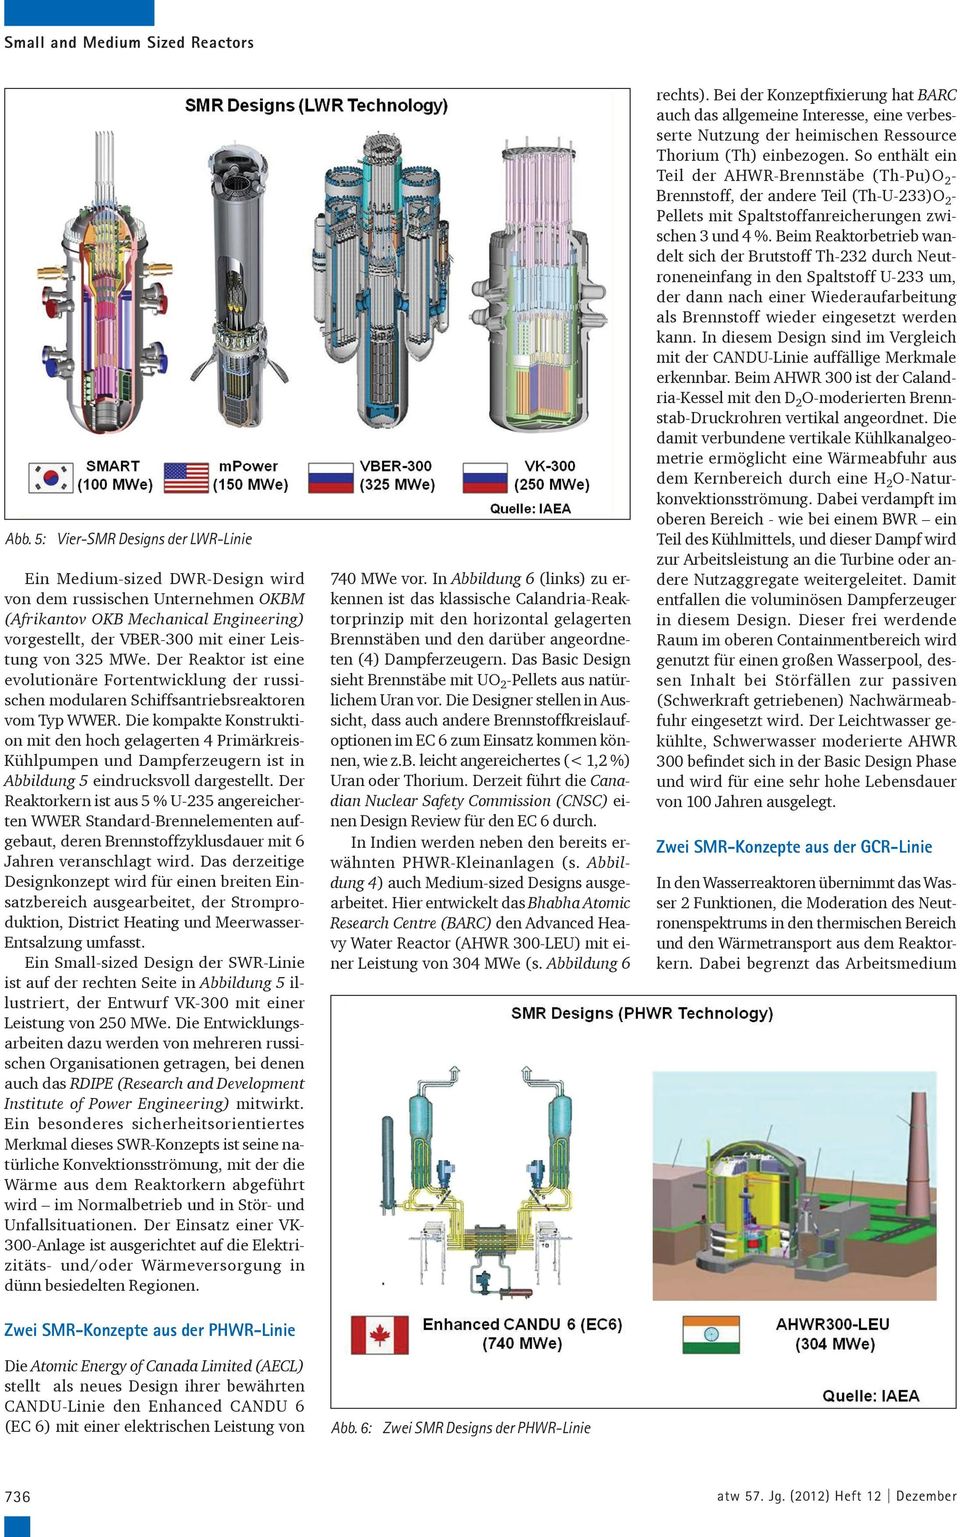 Der Reaktor ist eine evolutionäre Fortentwicklung der russischen modularen Schiffsantriebsreaktoren vom Typ WWER.